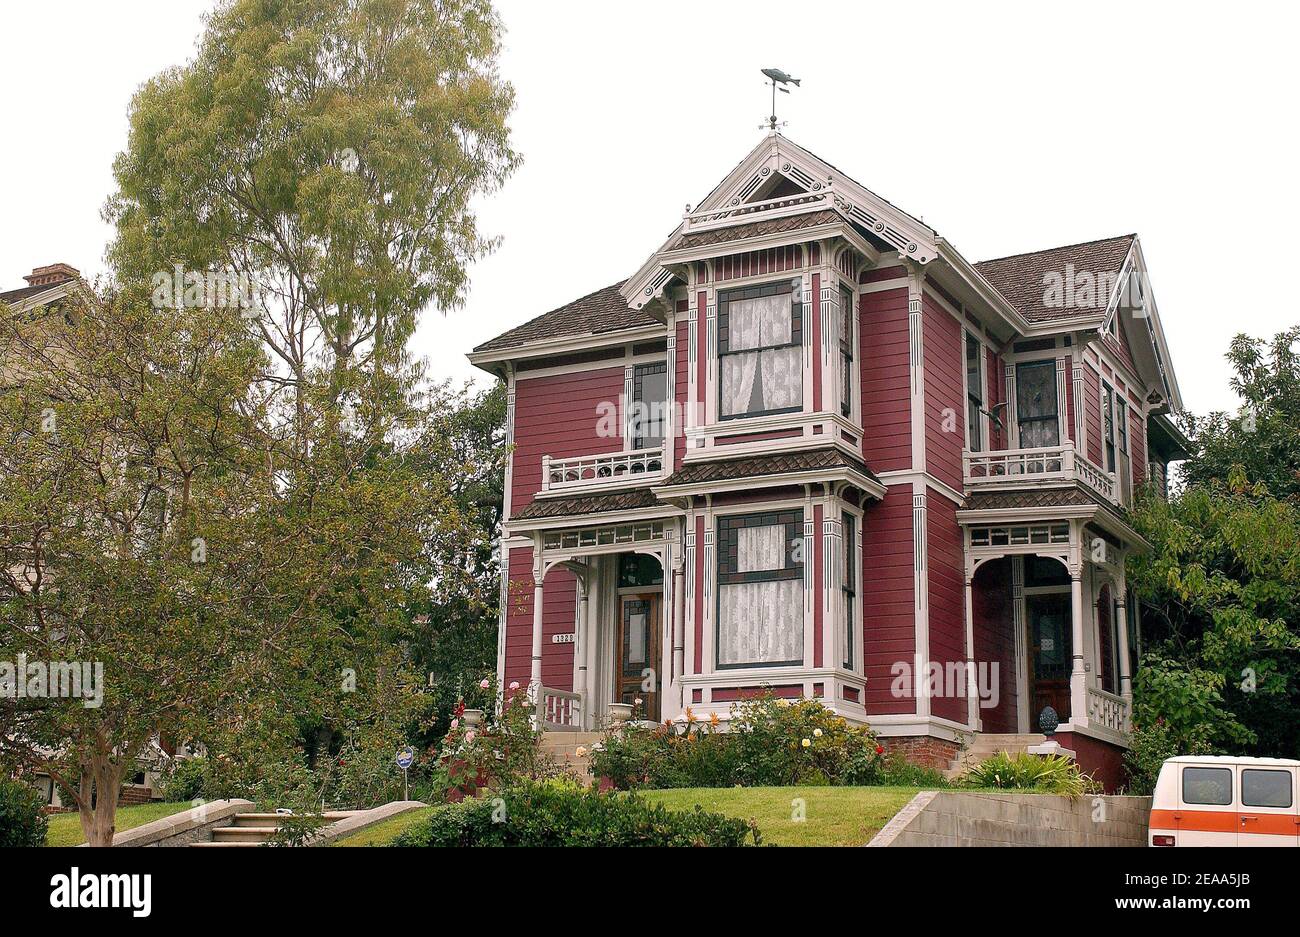 Das Bild des viktorianischen Hauses, das am 2005. Oktober in Los Angeles,  CA, in der Fernsehserie 'Charmed' als Wohnhaus der Halliwell-Familie  genutzt wurde. Foto von Lionel Hahn/ABACAPRESS.COM Stockfotografie - Alamy